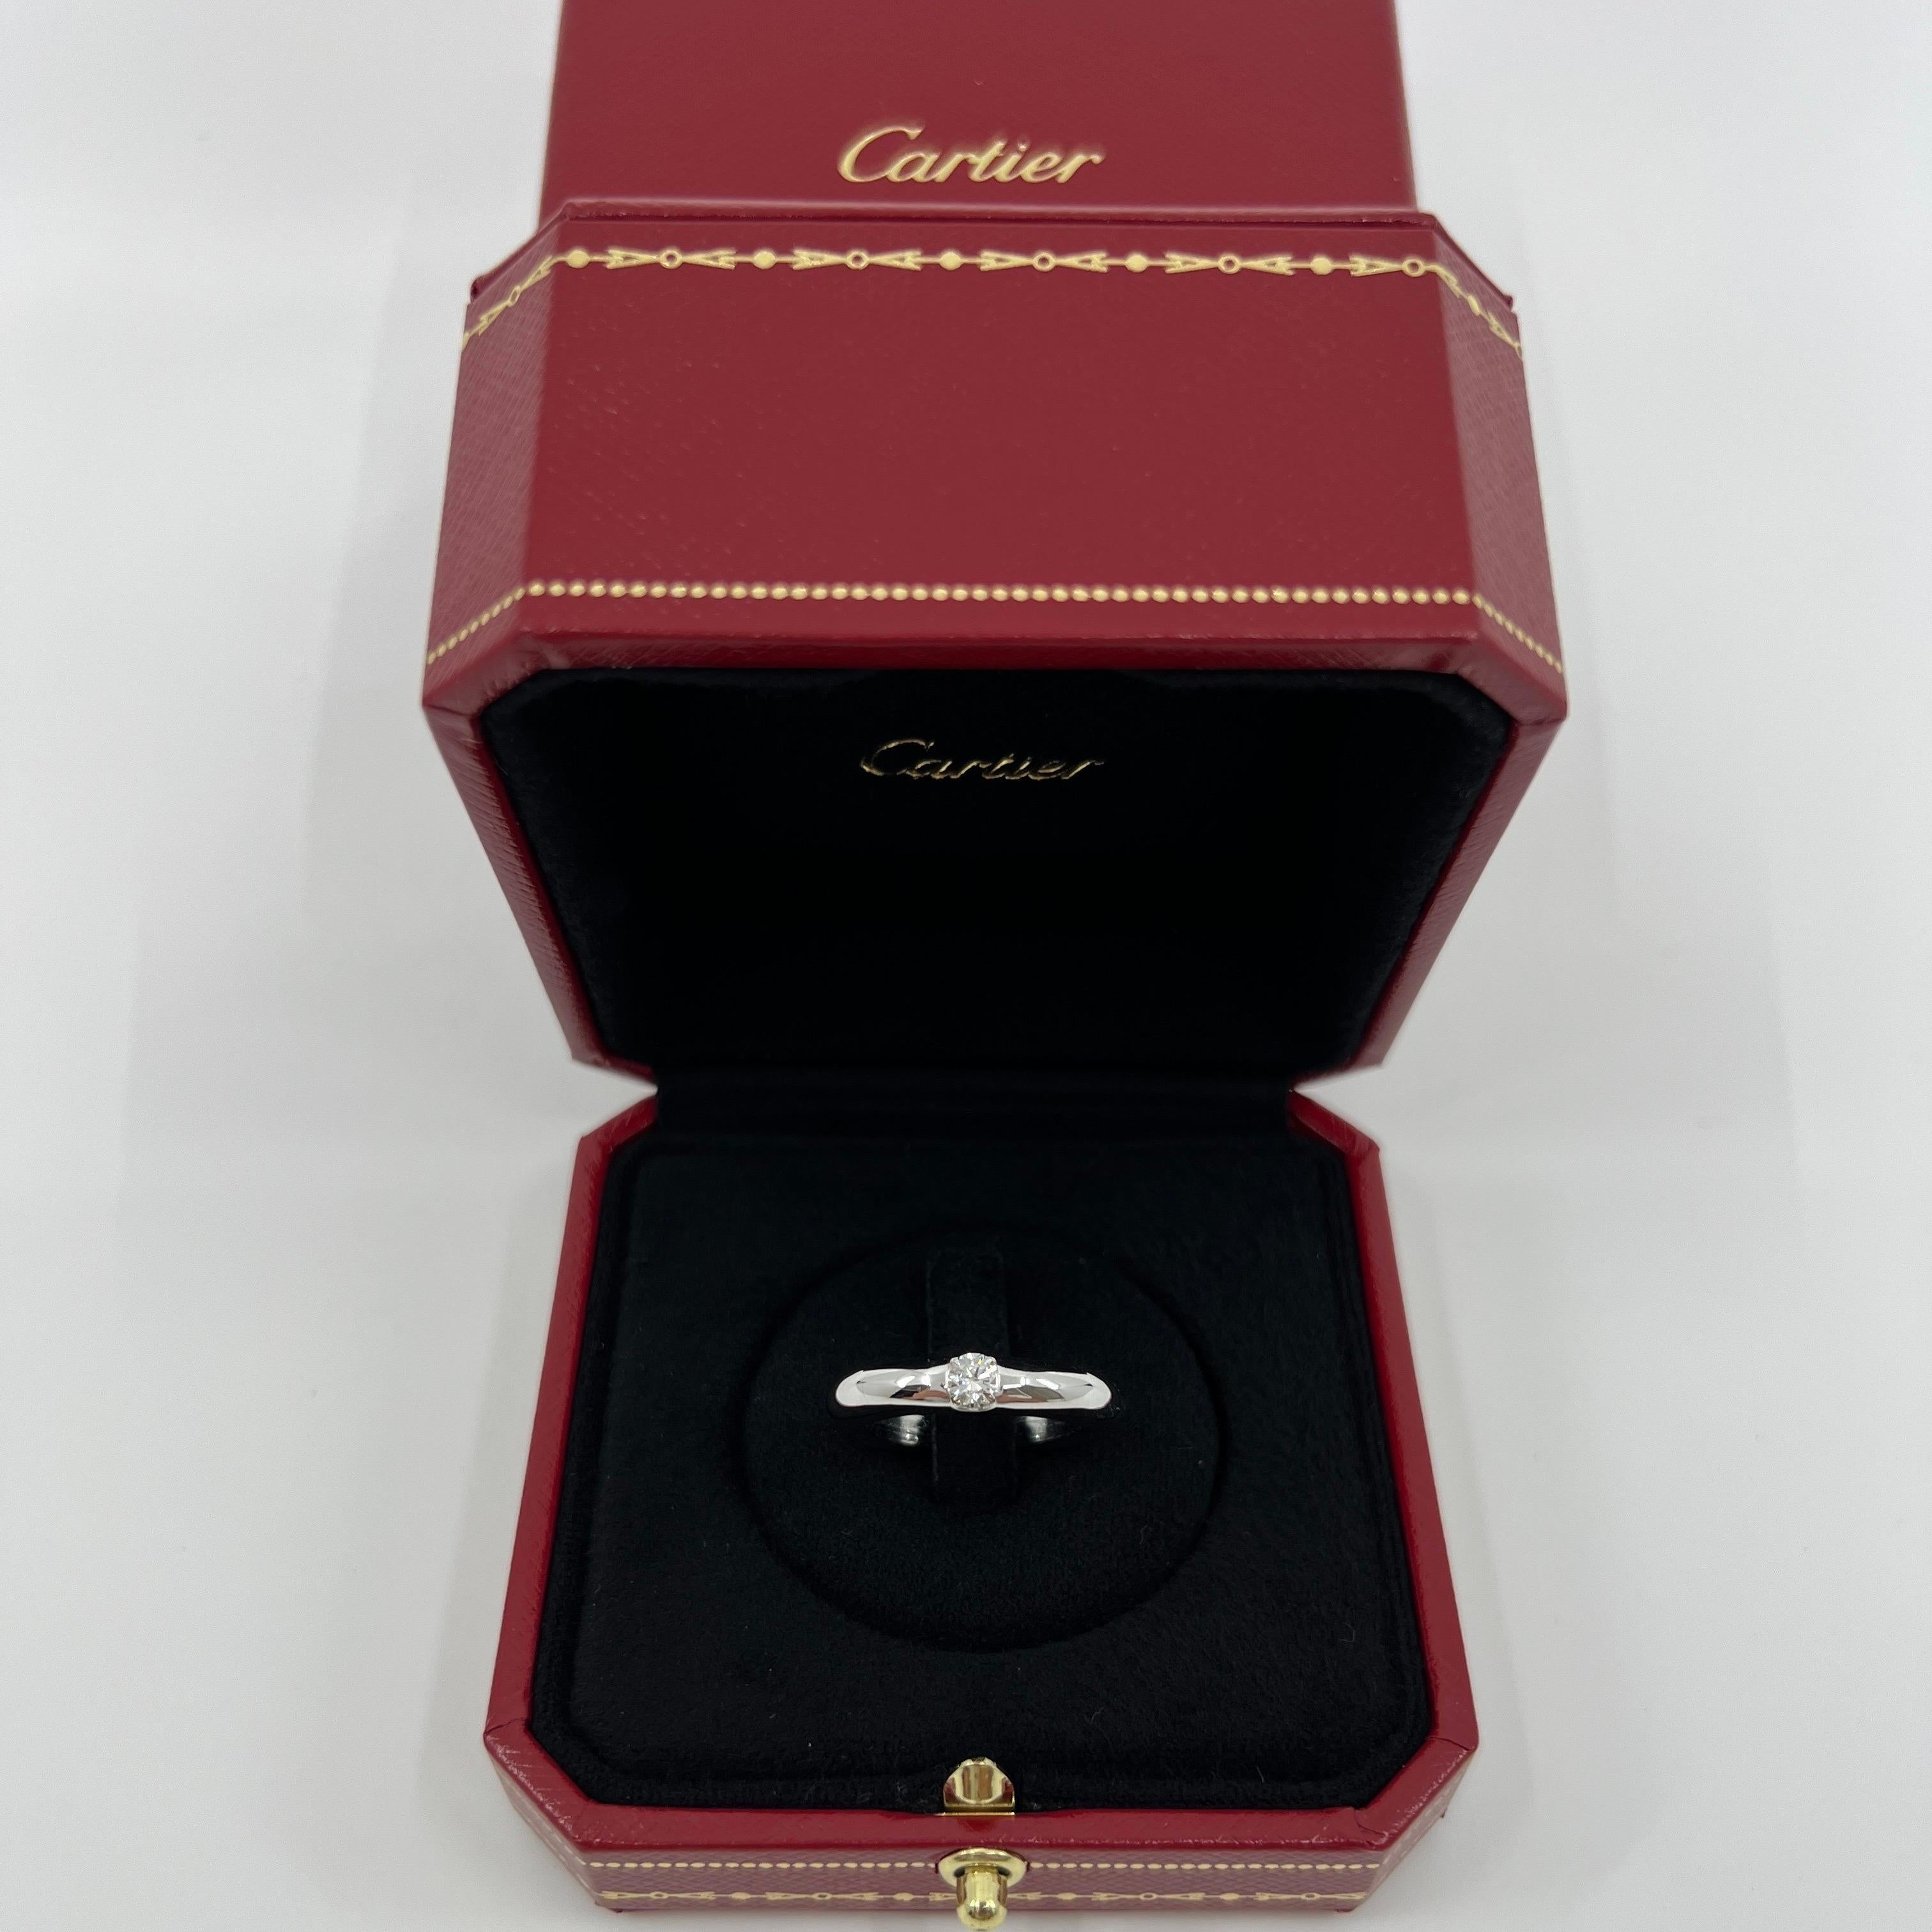 Vintage Cartier Round Brilliant Diamond 18k White Gold Solitaire Ring.

Superbe bague en or jaune sertie d'un diamant rond de 0,25ct. Couleur E, pureté VVS1, excellente taille ronde et brillante.
Les maisons de haute joaillerie comme Cartier